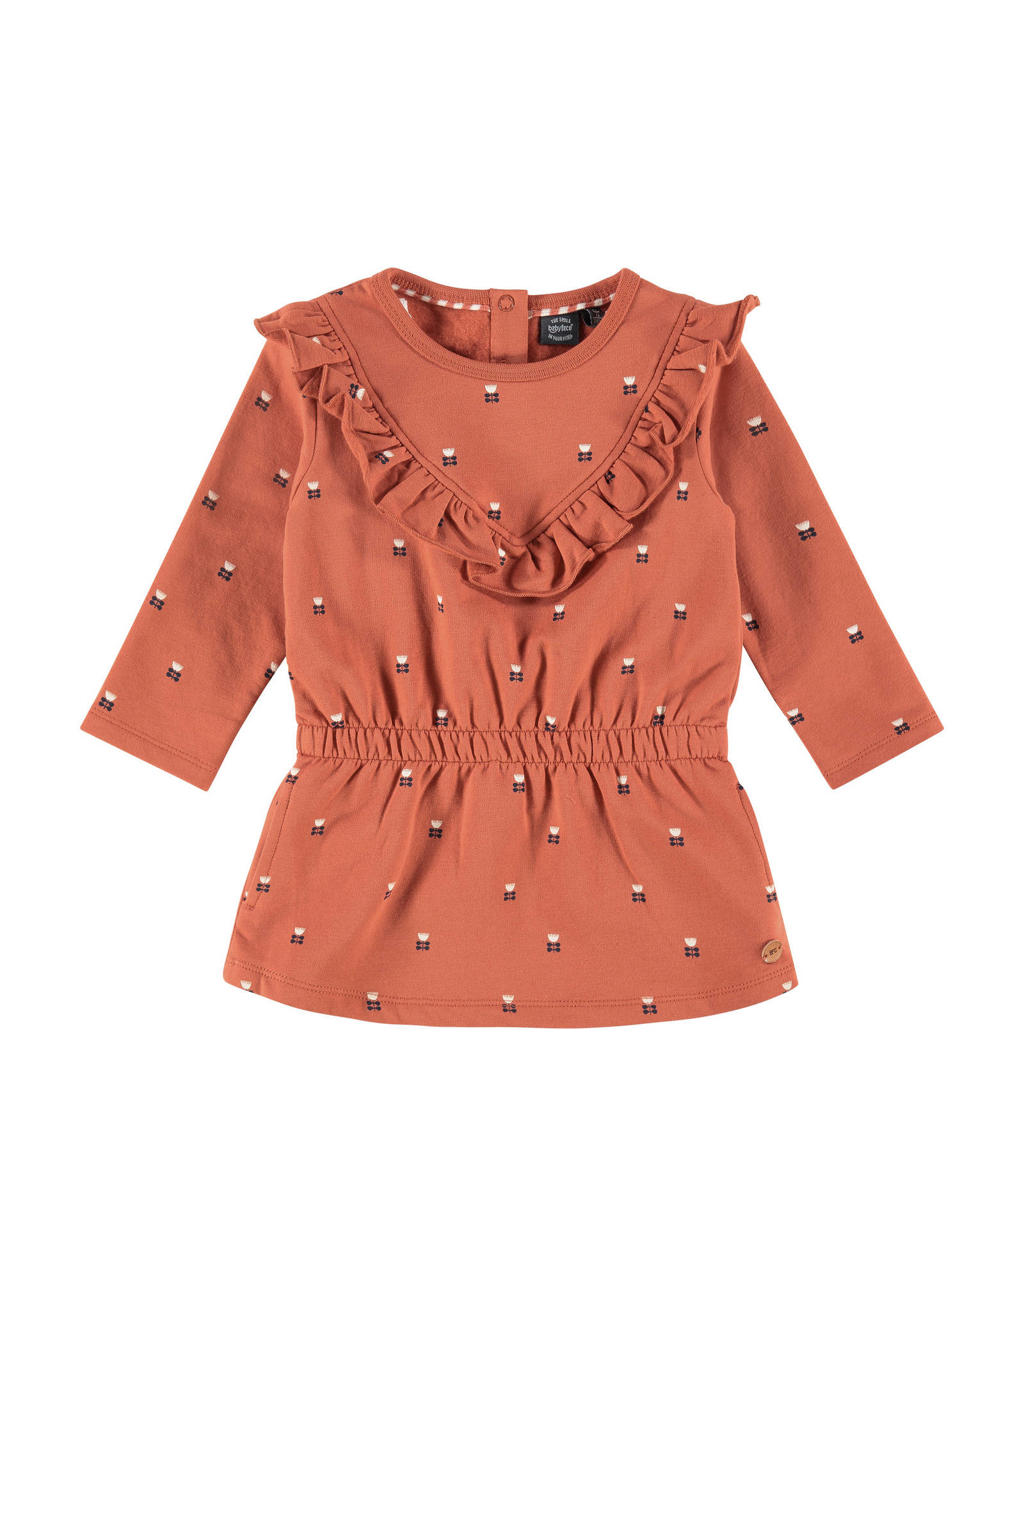 Oranje meisjes Babyface jurk met ruches van stretchkatoen met all over print, lange mouwen en ronde hals